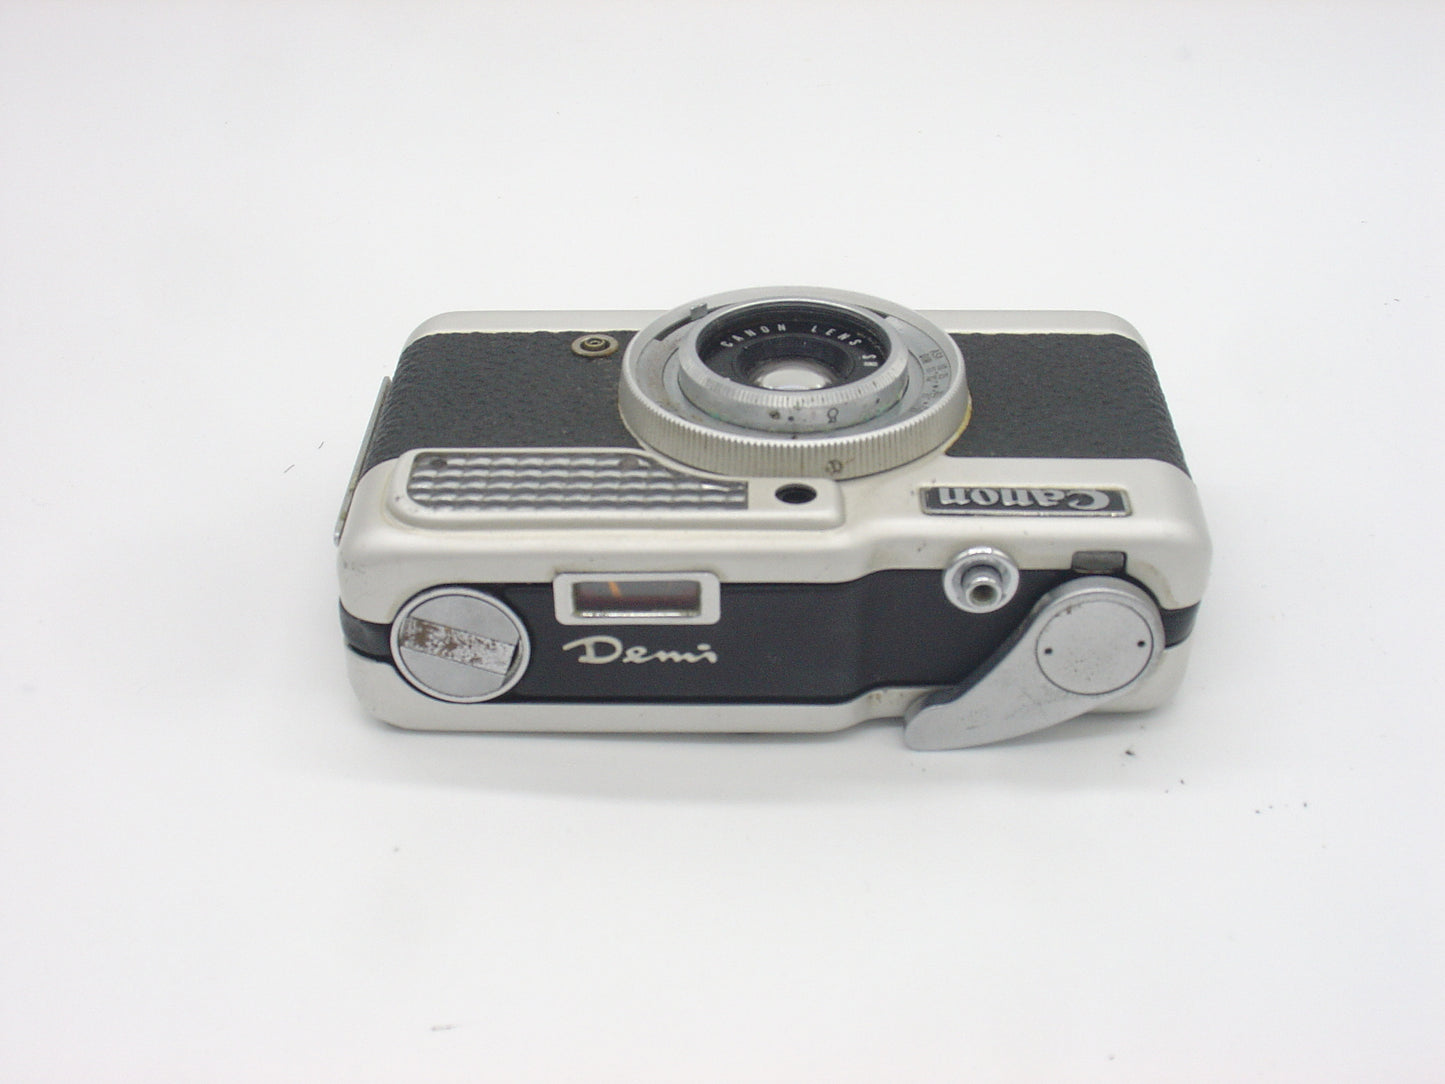 Canon Demi half-frame retro compact camera